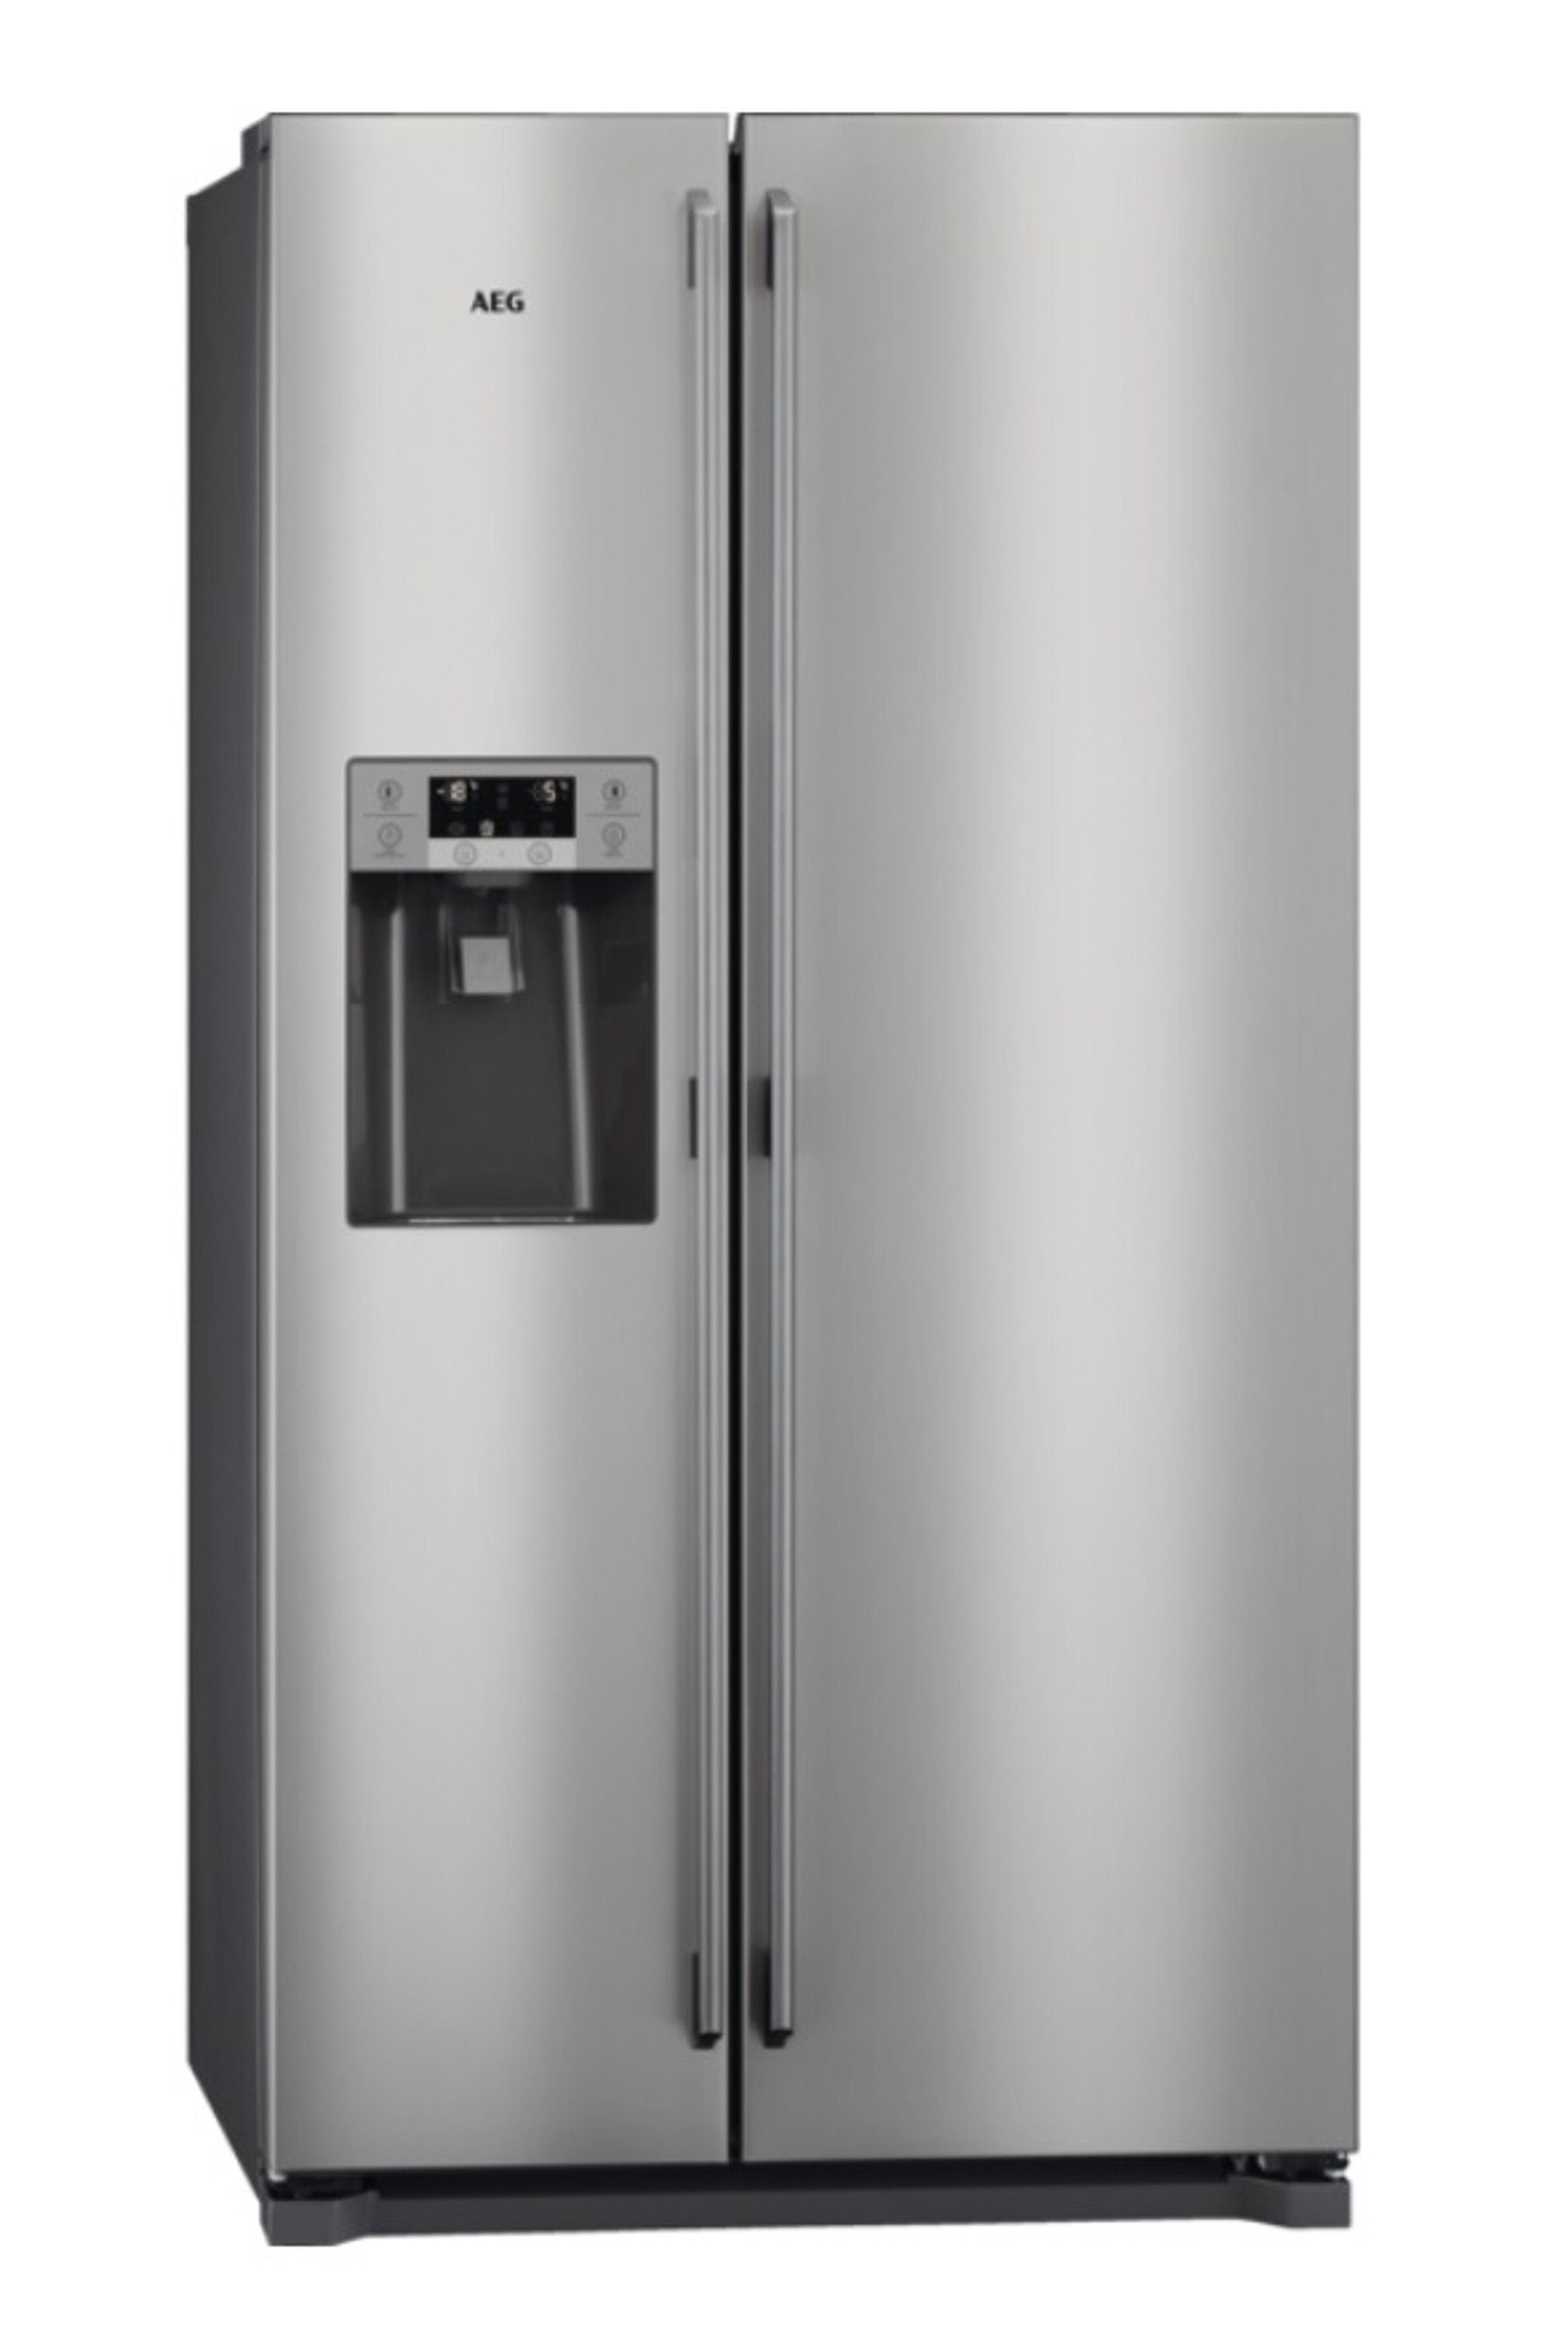 AEG Side-by-Side RMB76121NX, 177 cm hoch, 91.2 cm breit, NoFrost,  NoFrost-Technik im Gefrierraum – nie mehr abtauen | Side-by-Side Kühlschränke